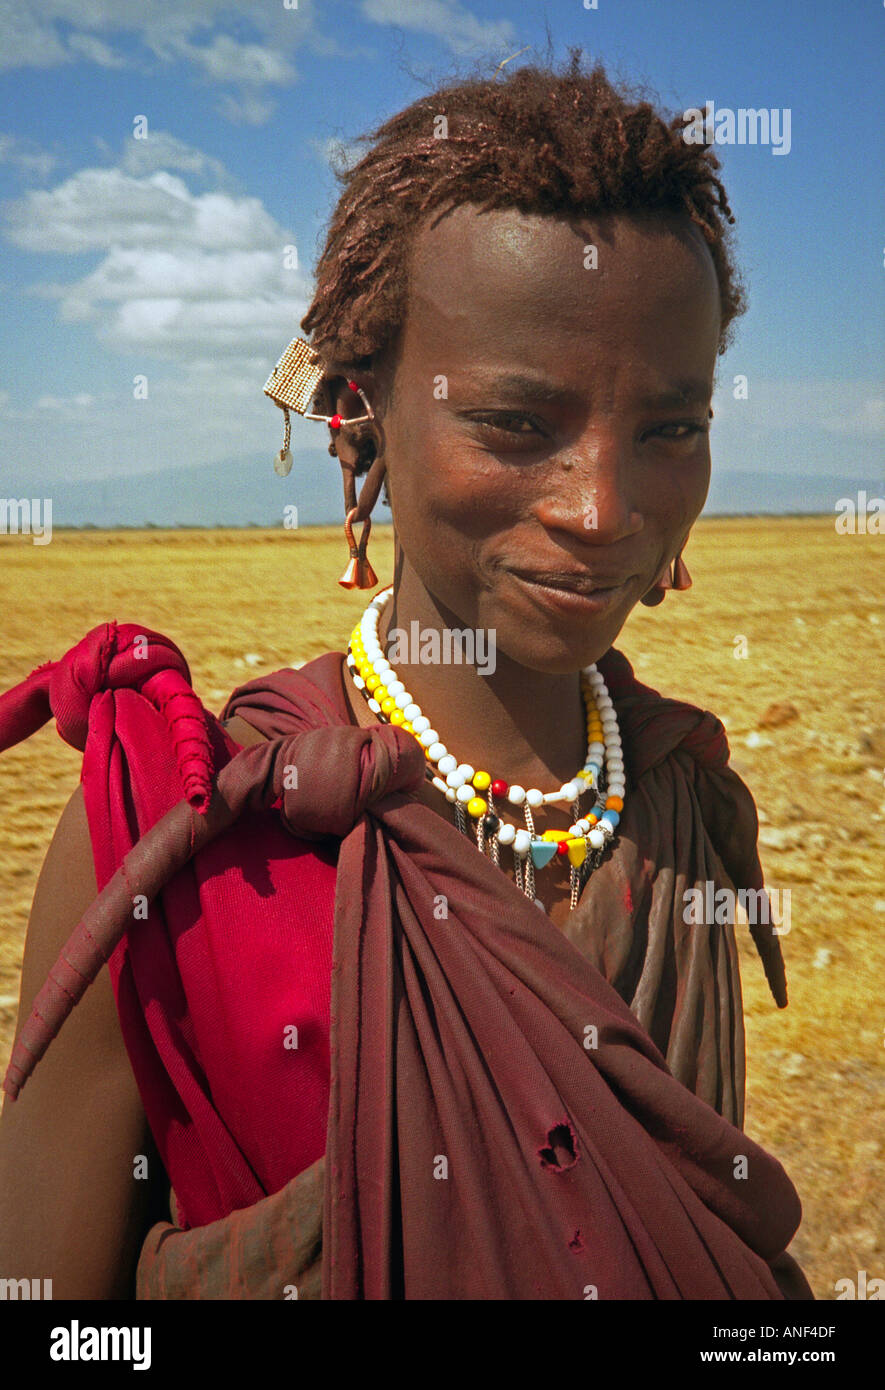 Décorées de perles colorées de l'Adolescent travaux peuple masai Masai Mara National Reserve d'Ewaso Ngiro sud du Kenya Afrique de l'Est Banque D'Images